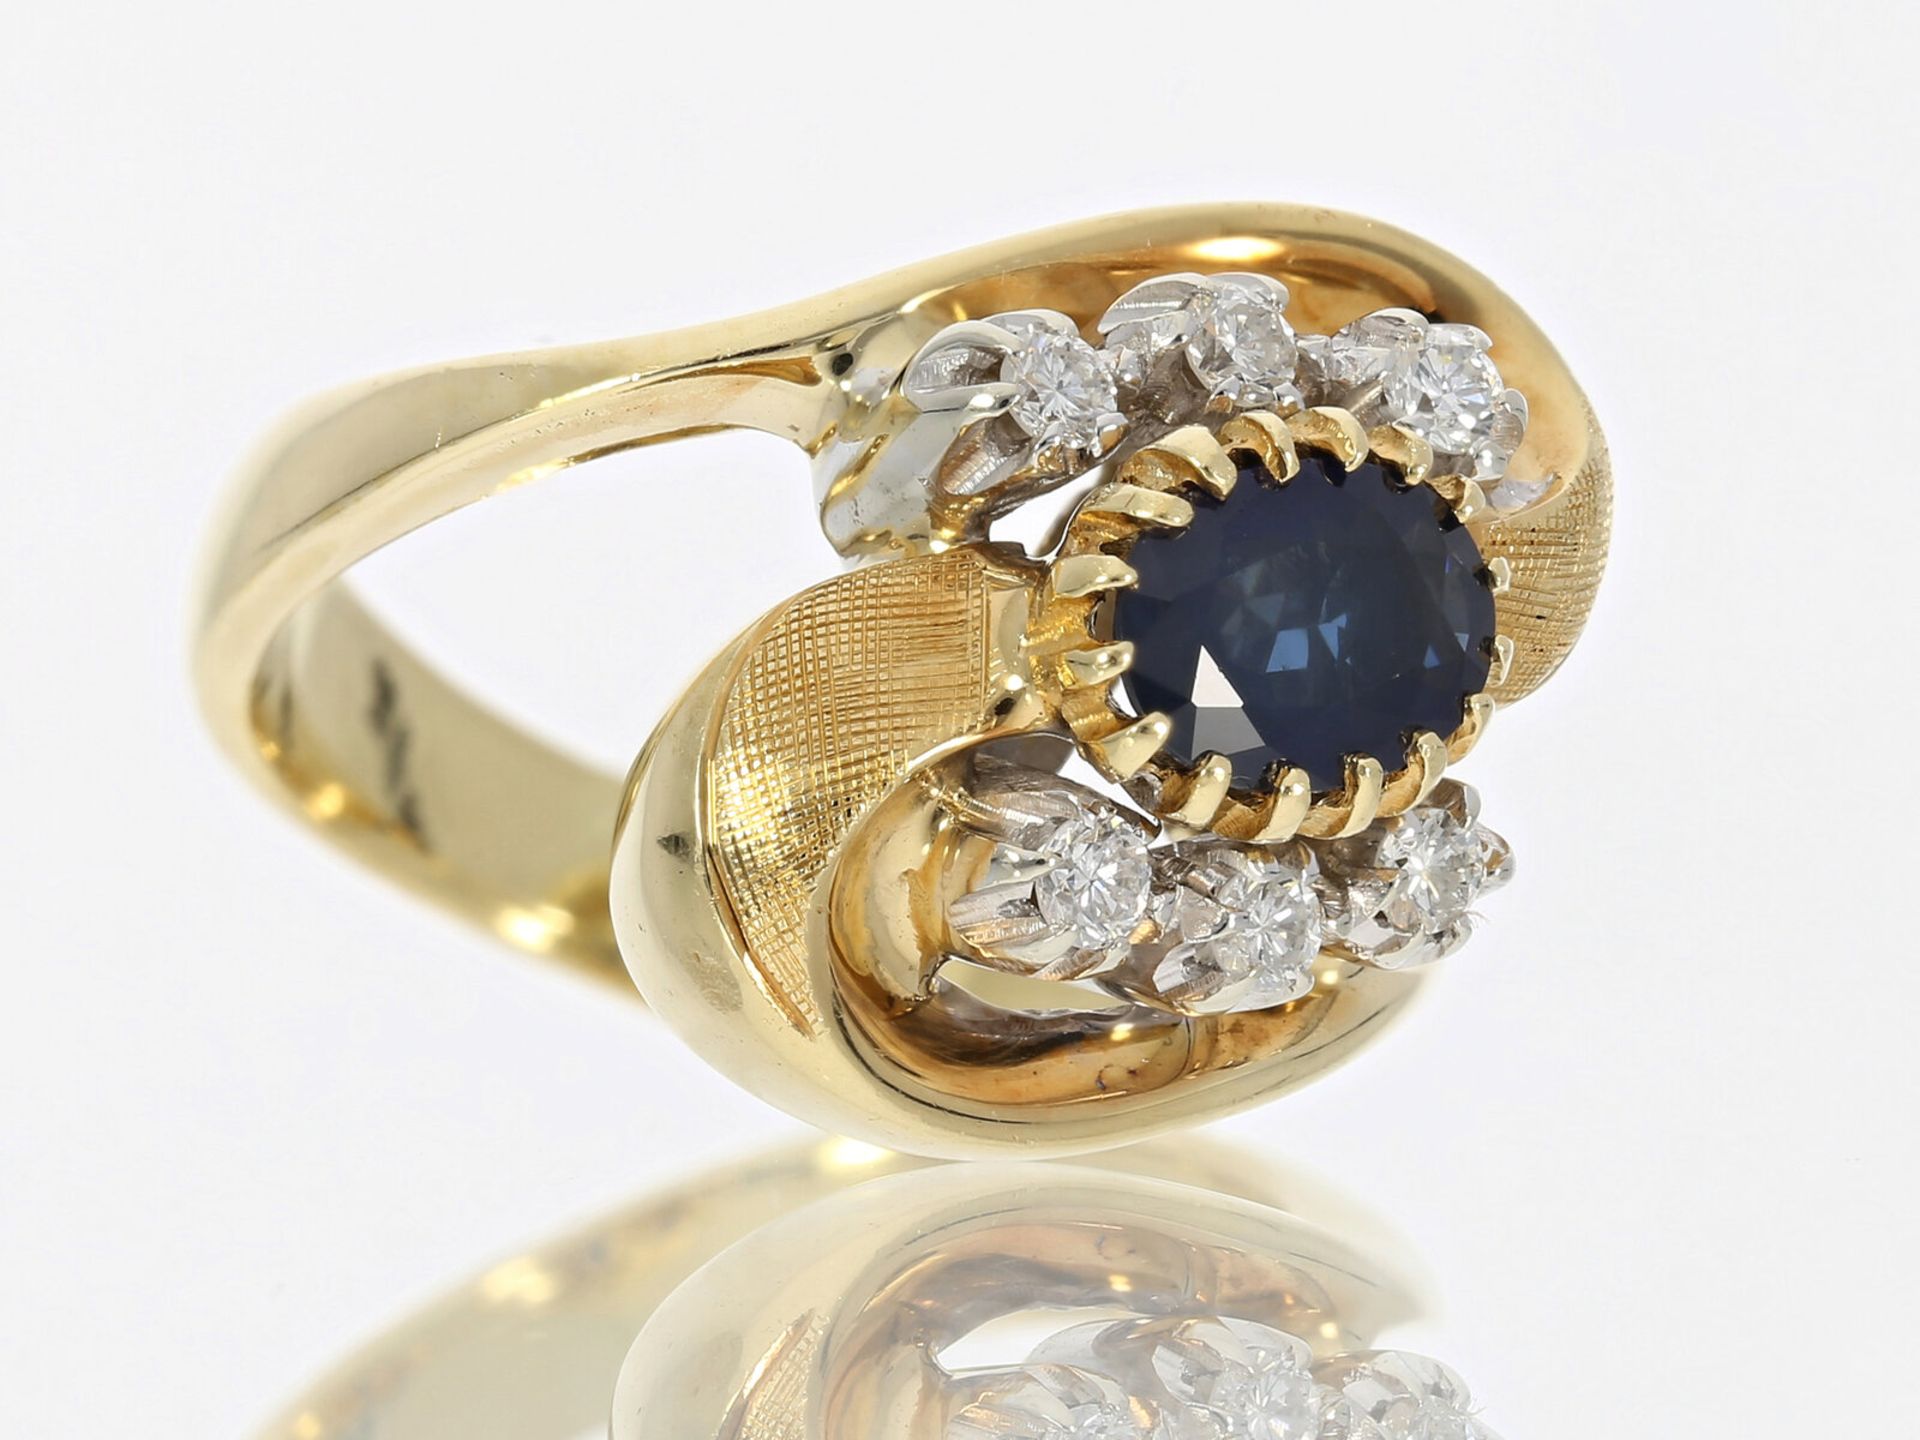 Ring: Italienische Designer Goldschmiedearbeit von Fabio Giorgio mit Saphir/Brillant, Handarbeit